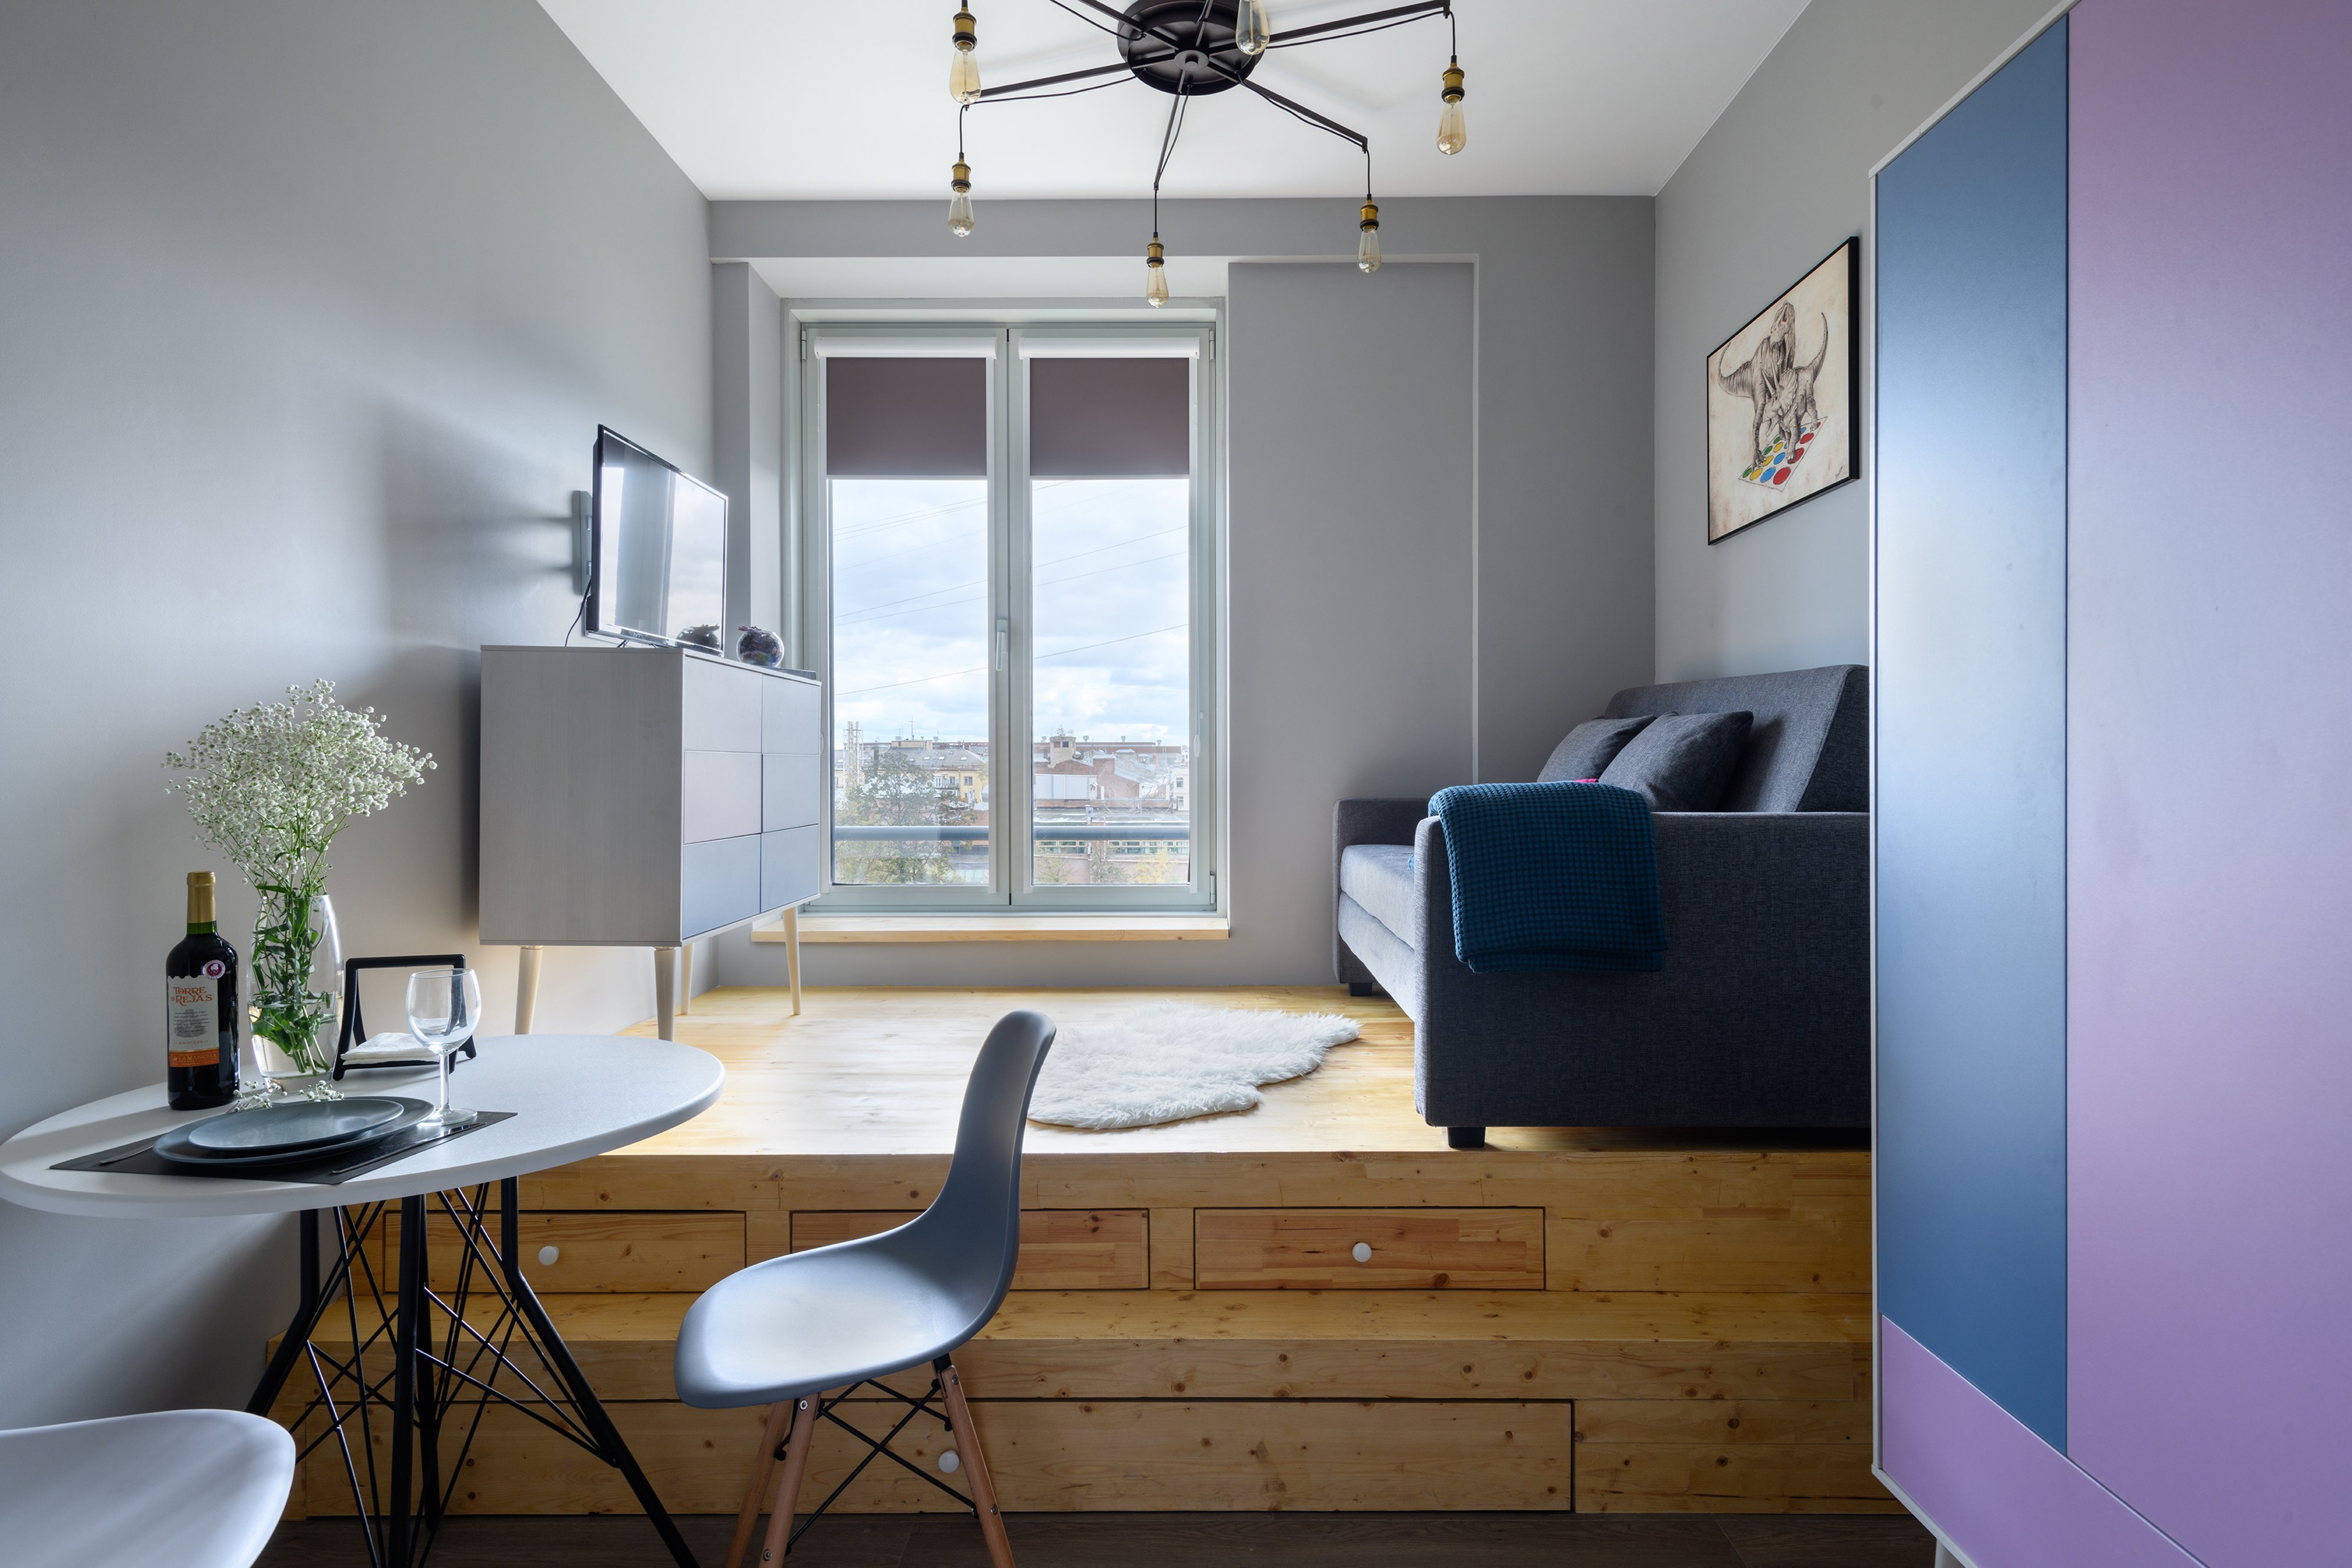 Комфортная квартира 31-32 кв. м: оформление и зонирование жилого пространства